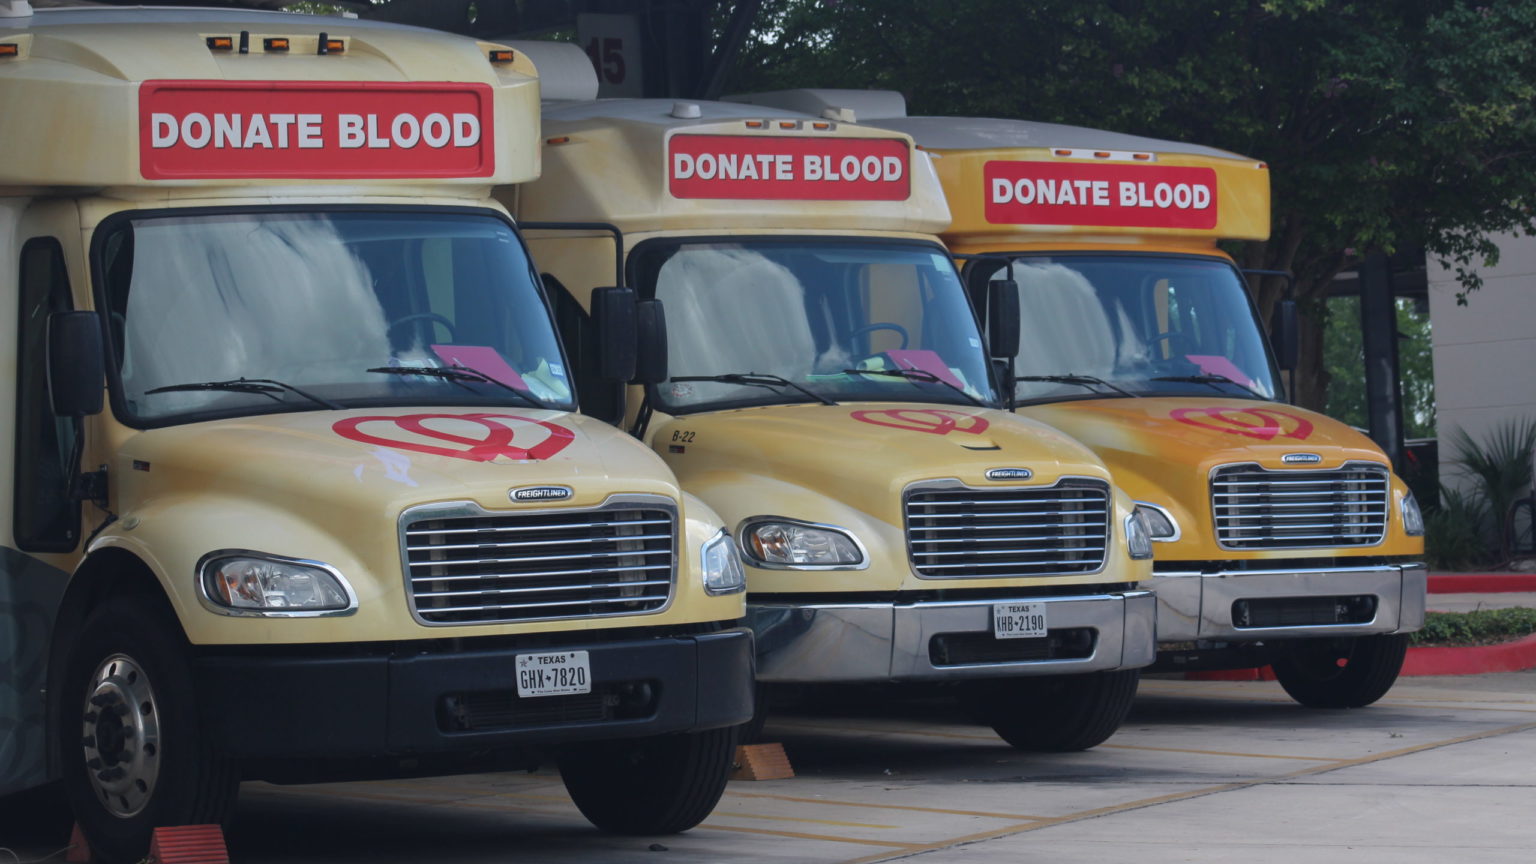 Funding bloodmobiles